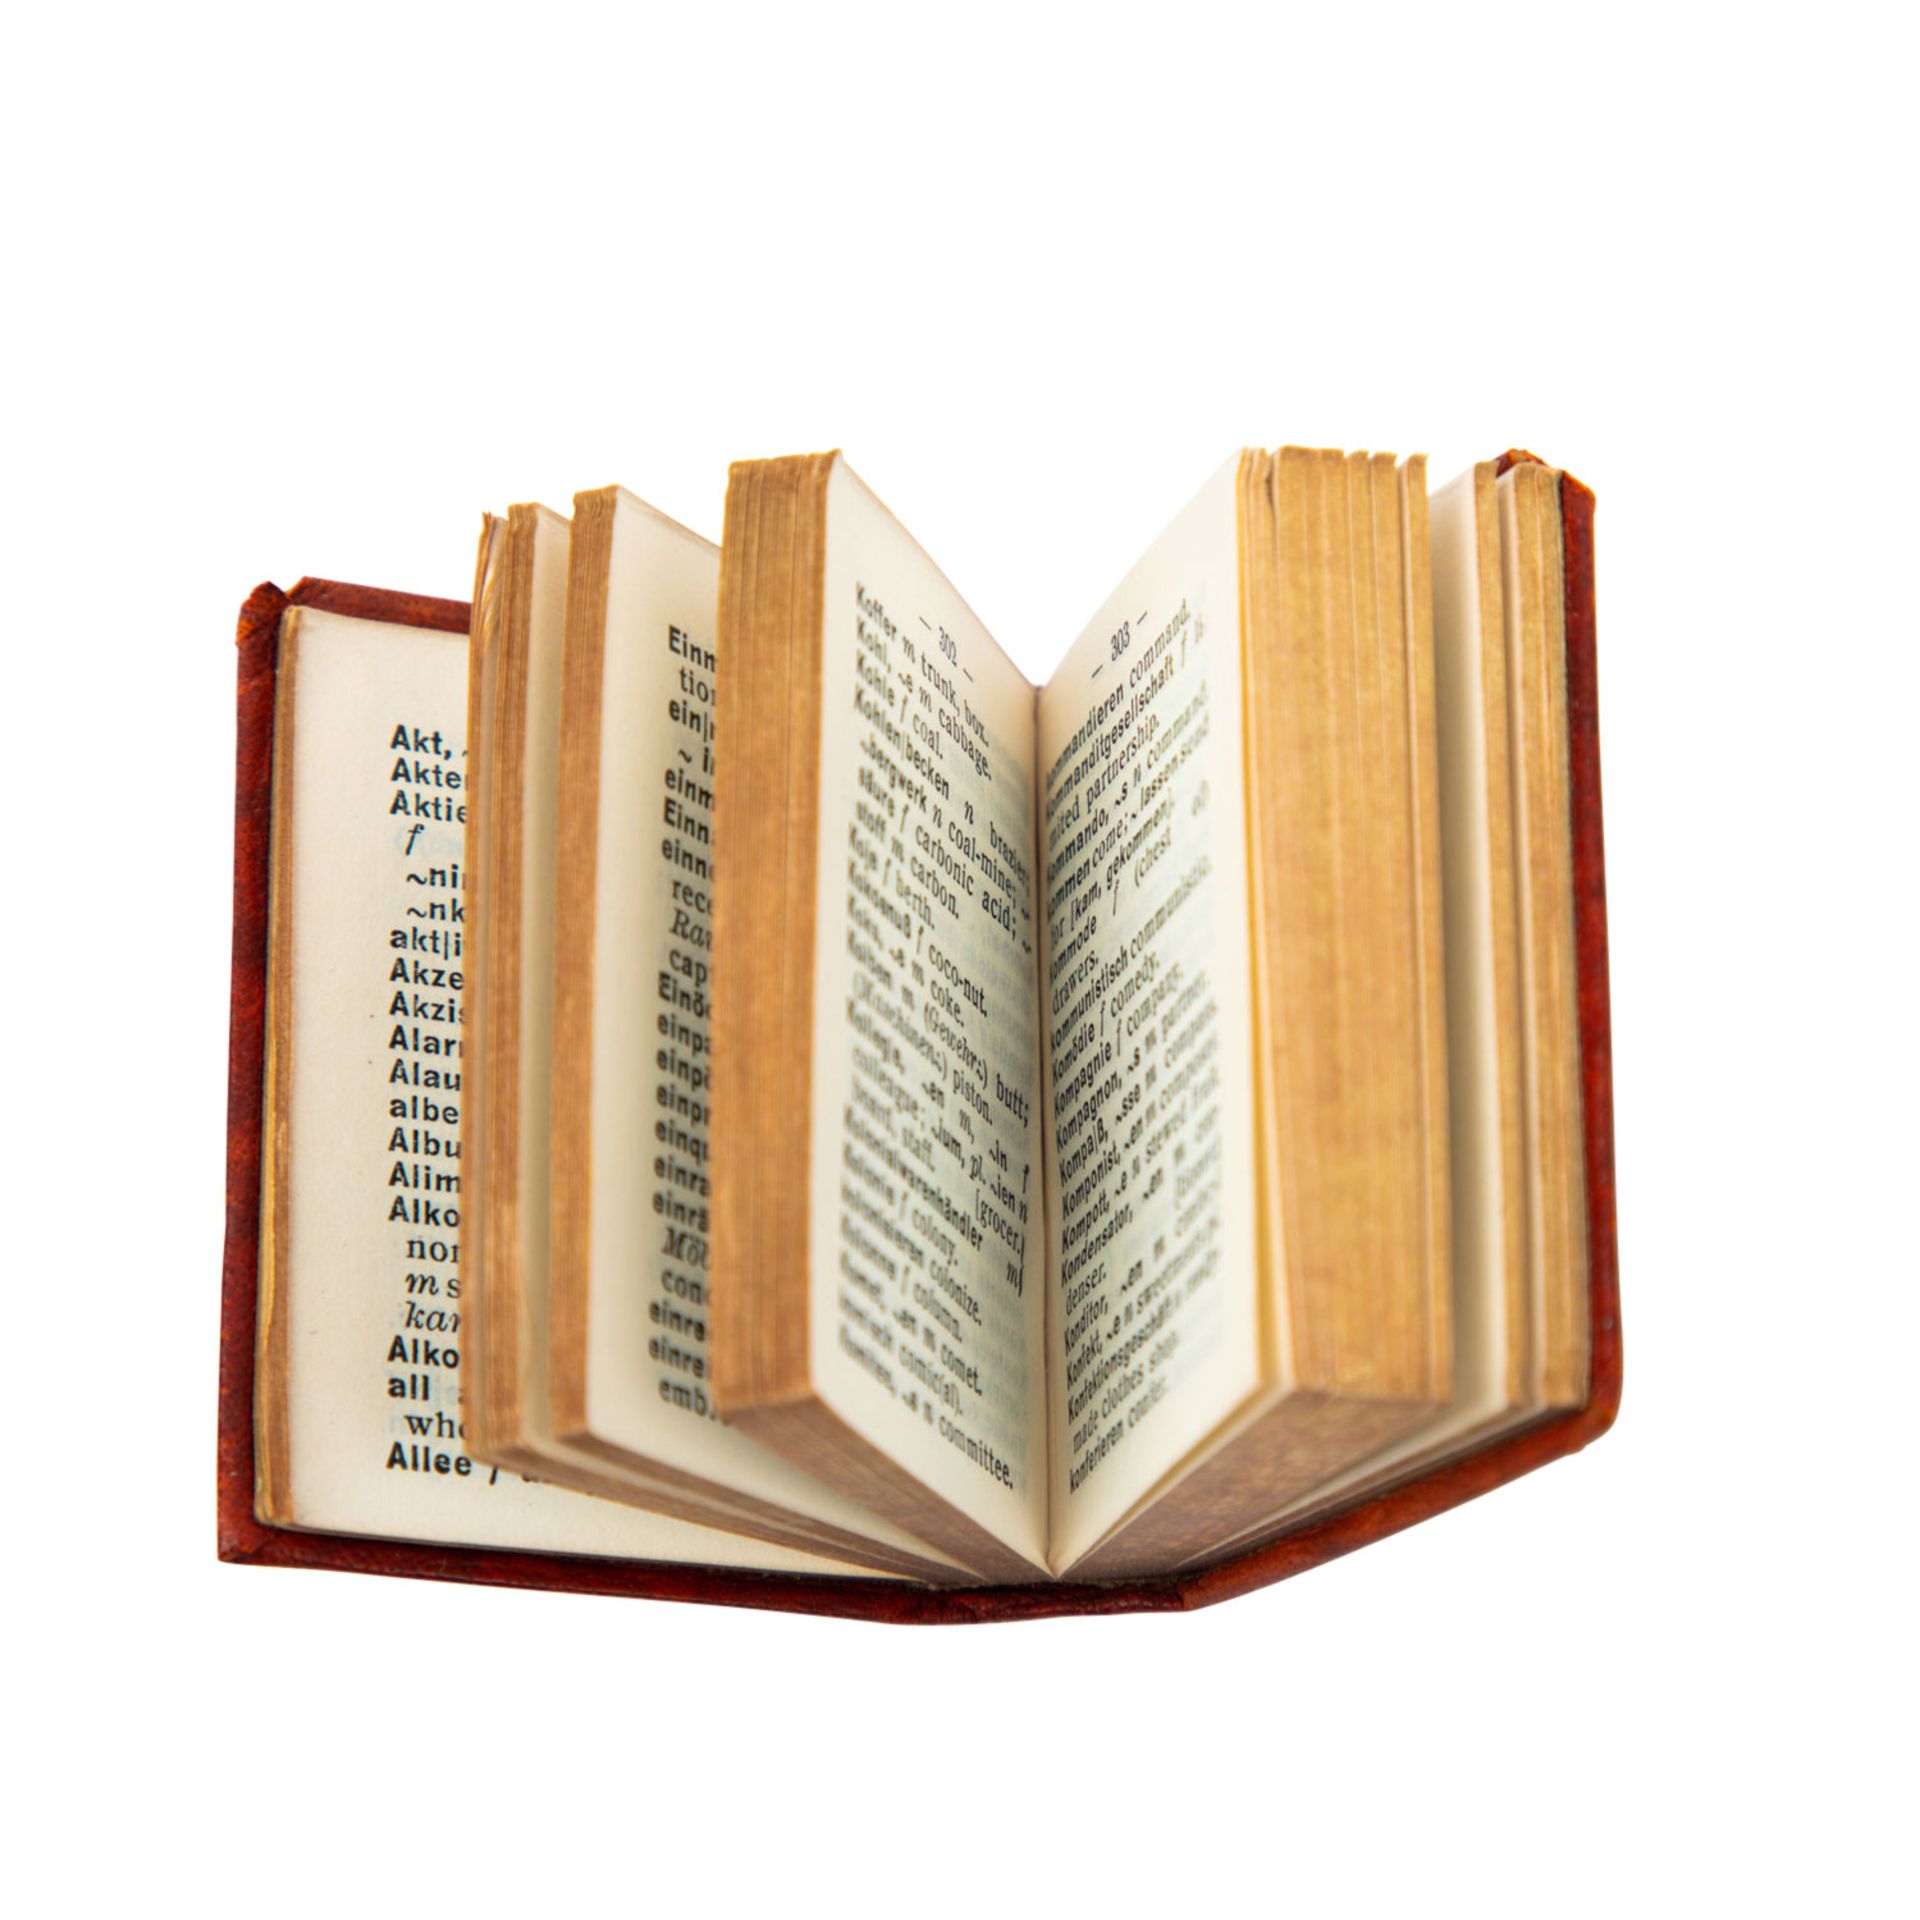 Langenscheidts Miniatur-Wörterbuch. 4 Bände. - Image 5 of 6